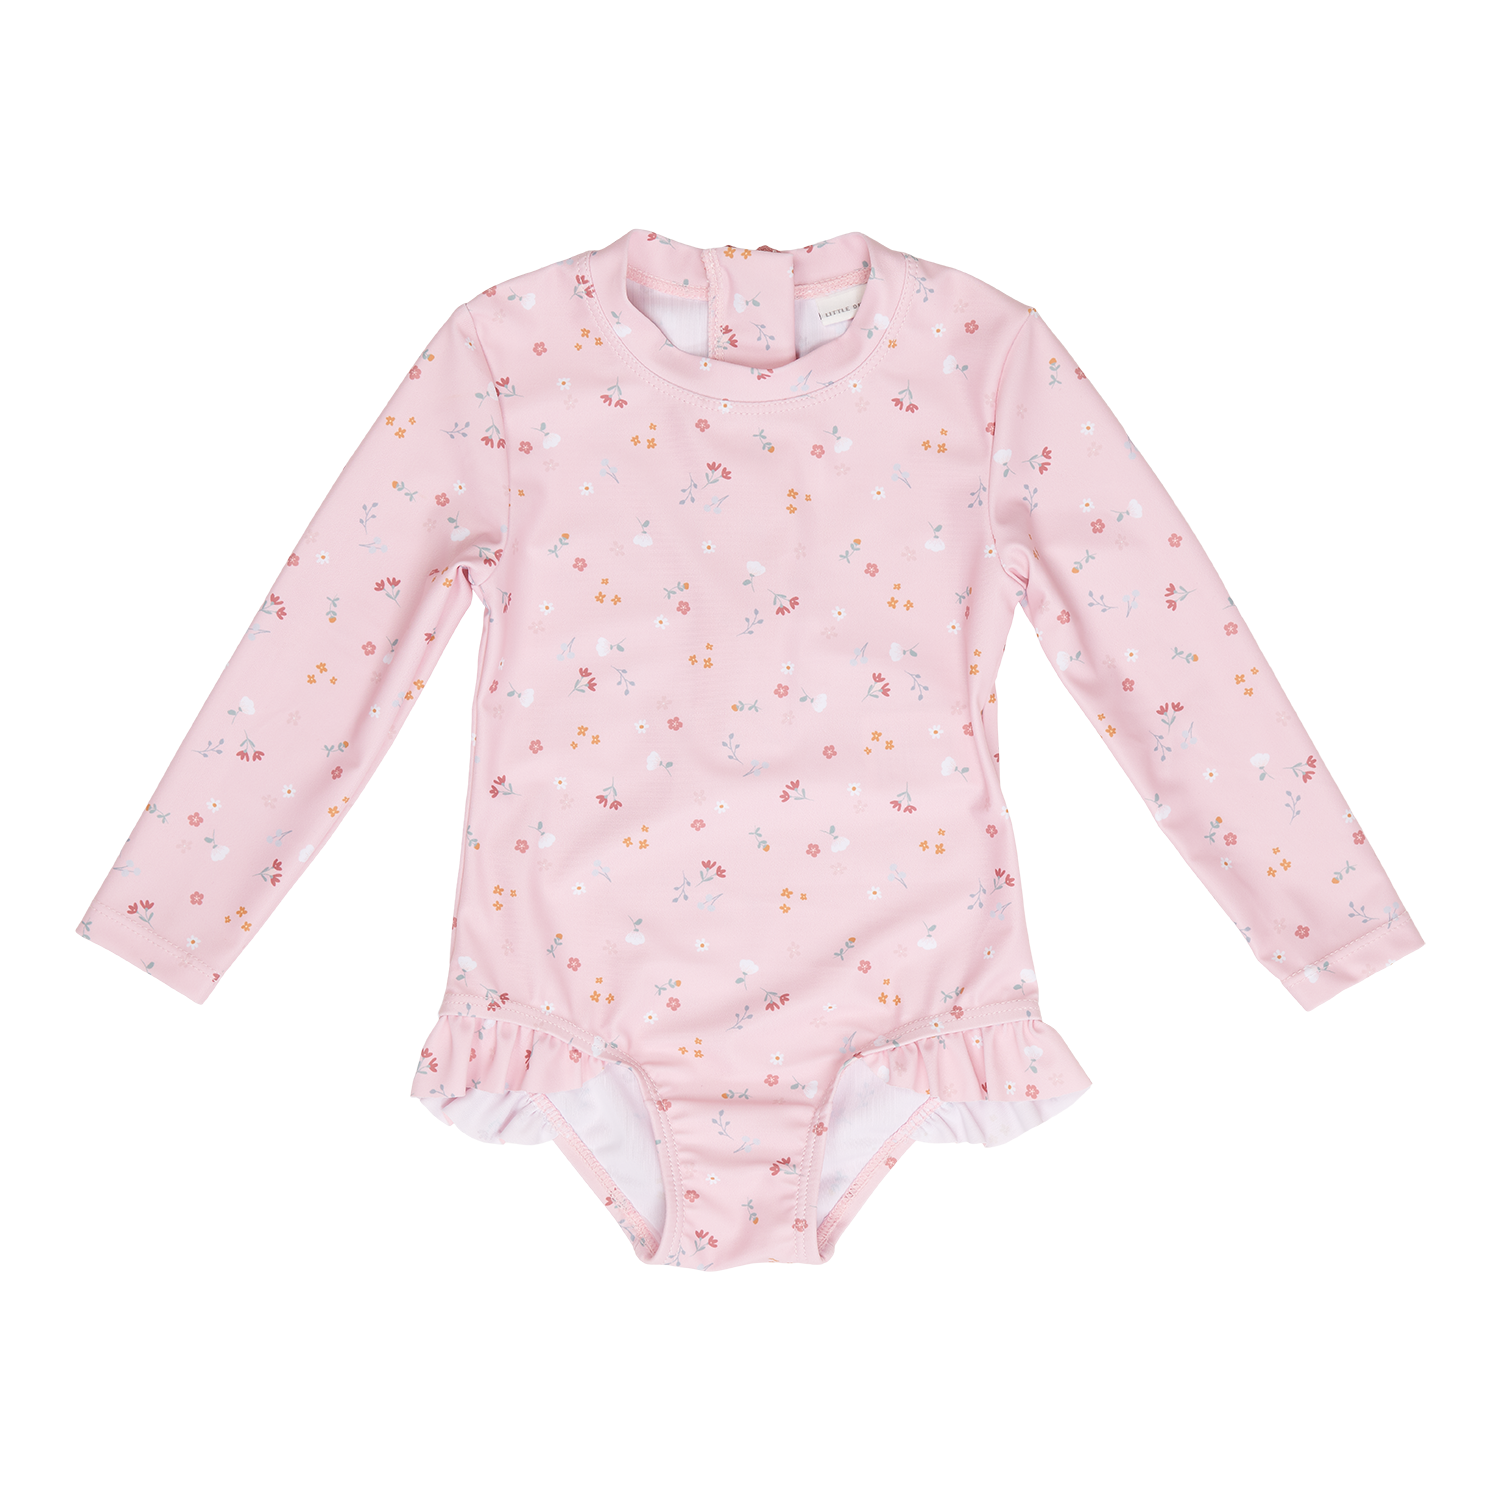 Badeanzug mit Rüschen langarm Little pink Flowers / Kleine pinke Blumen rosa (Gr. 86/92)